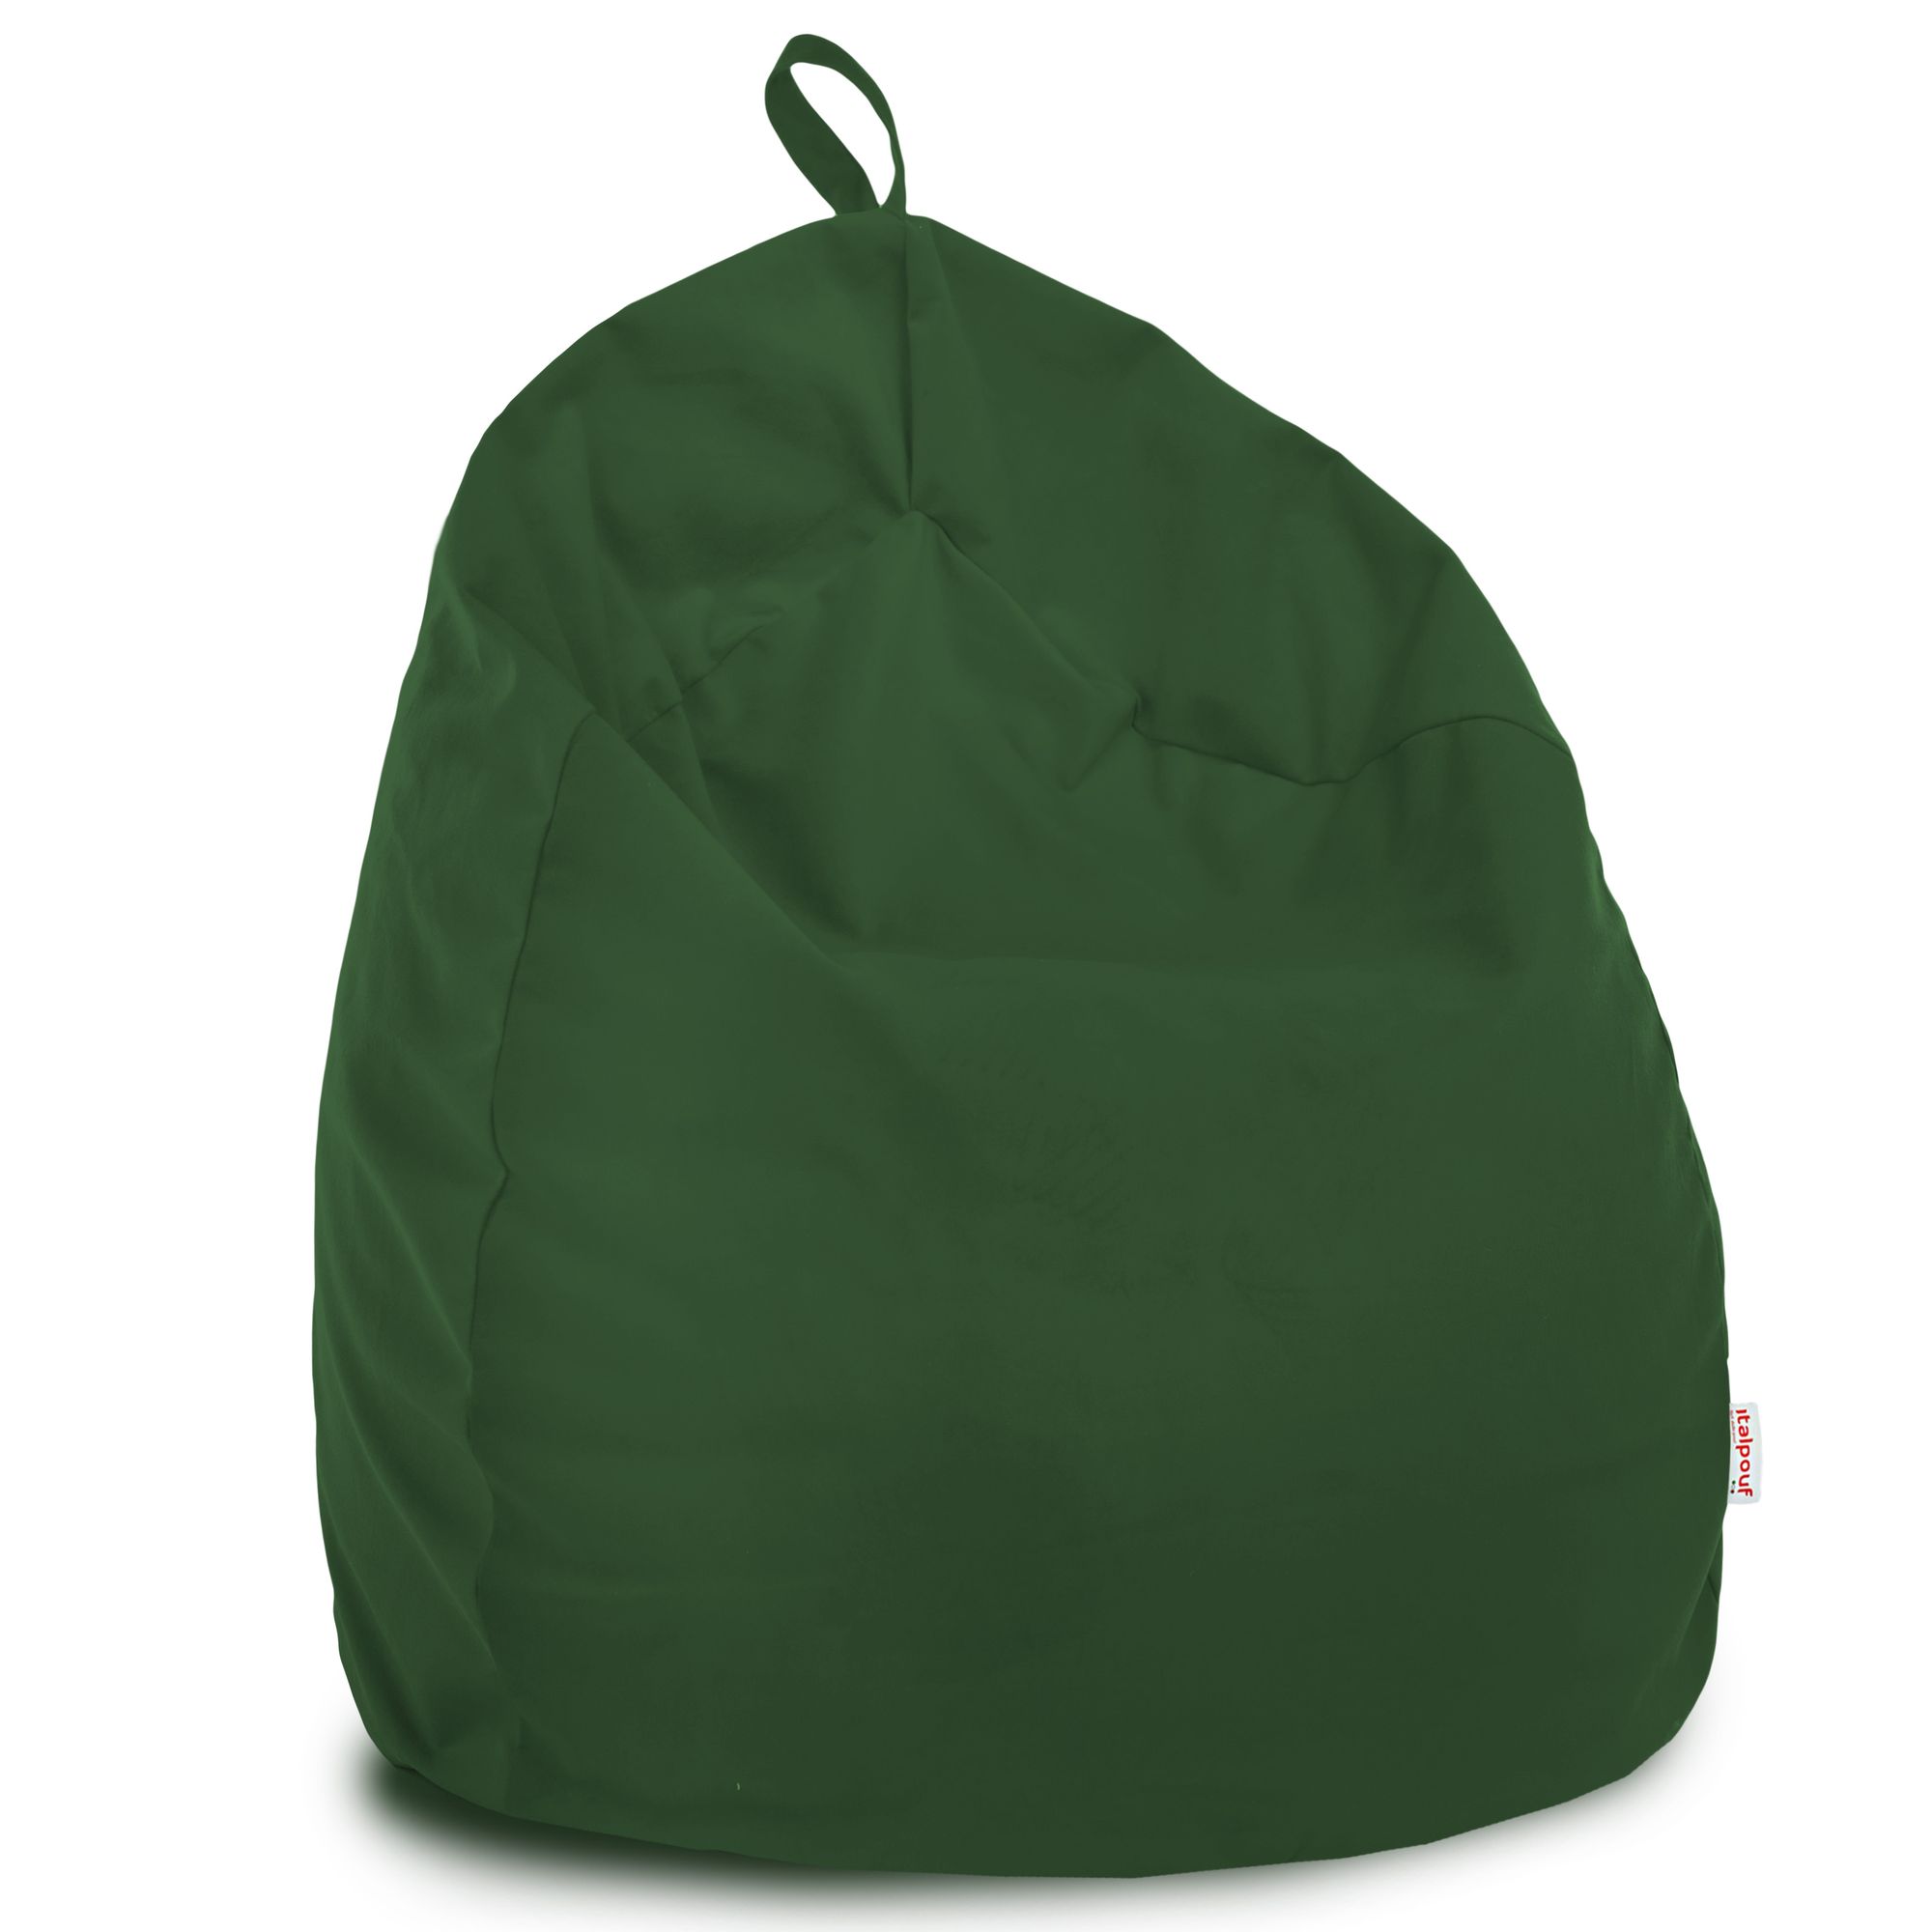 Pouf sacco morbido in velluto di qualità. Poltrona sacco verde